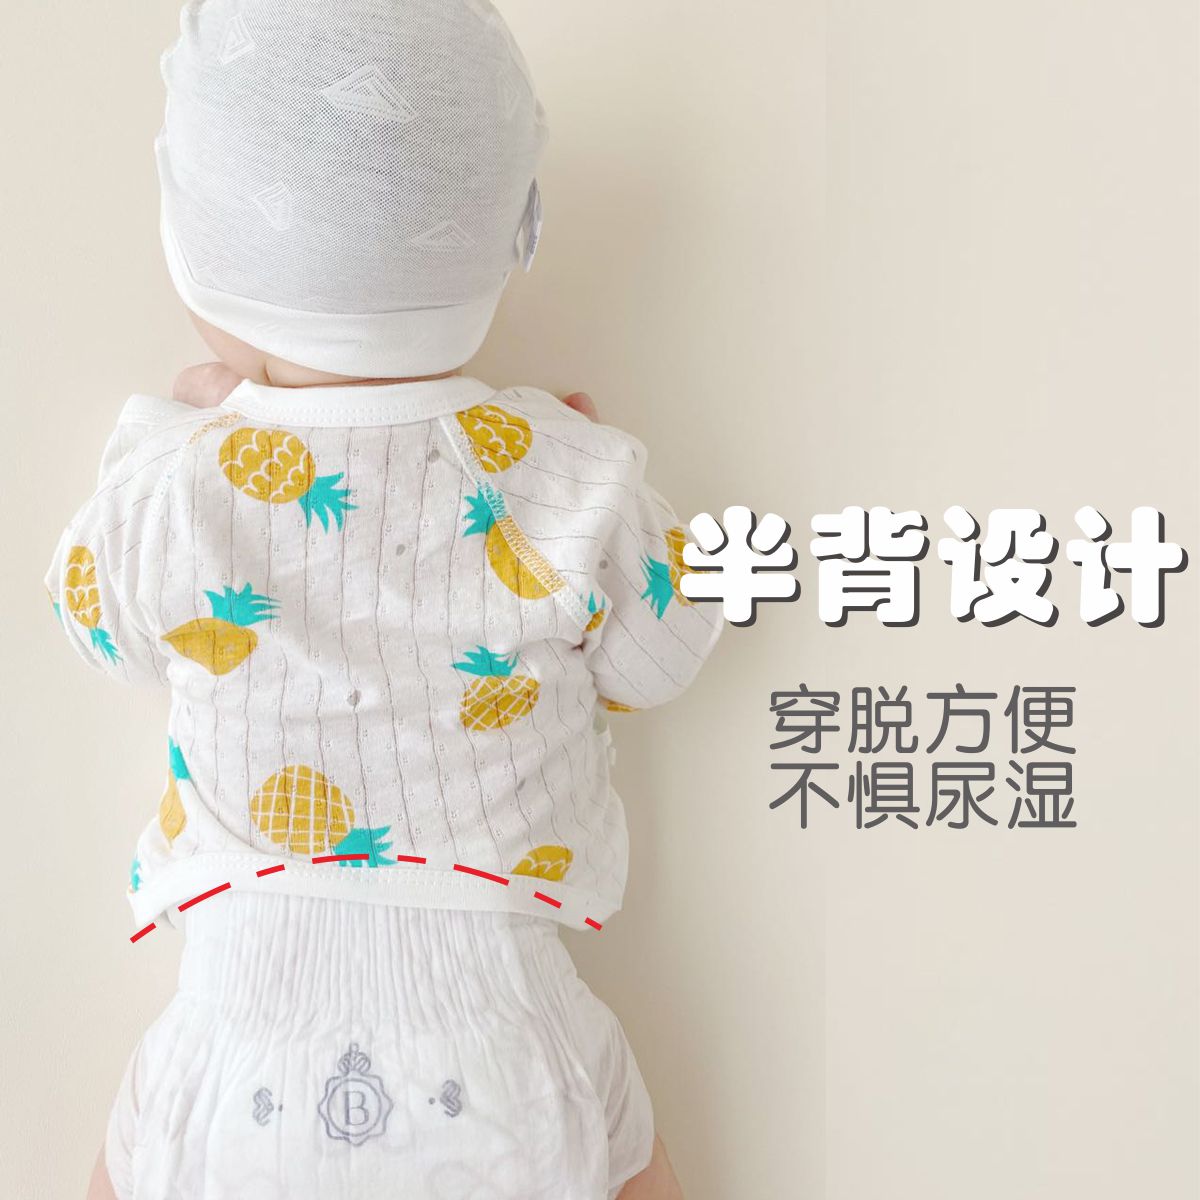 新生婴儿儿衣服无骨上衣和尚打底内衣防尿湿初生纯棉半背衣夏季薄